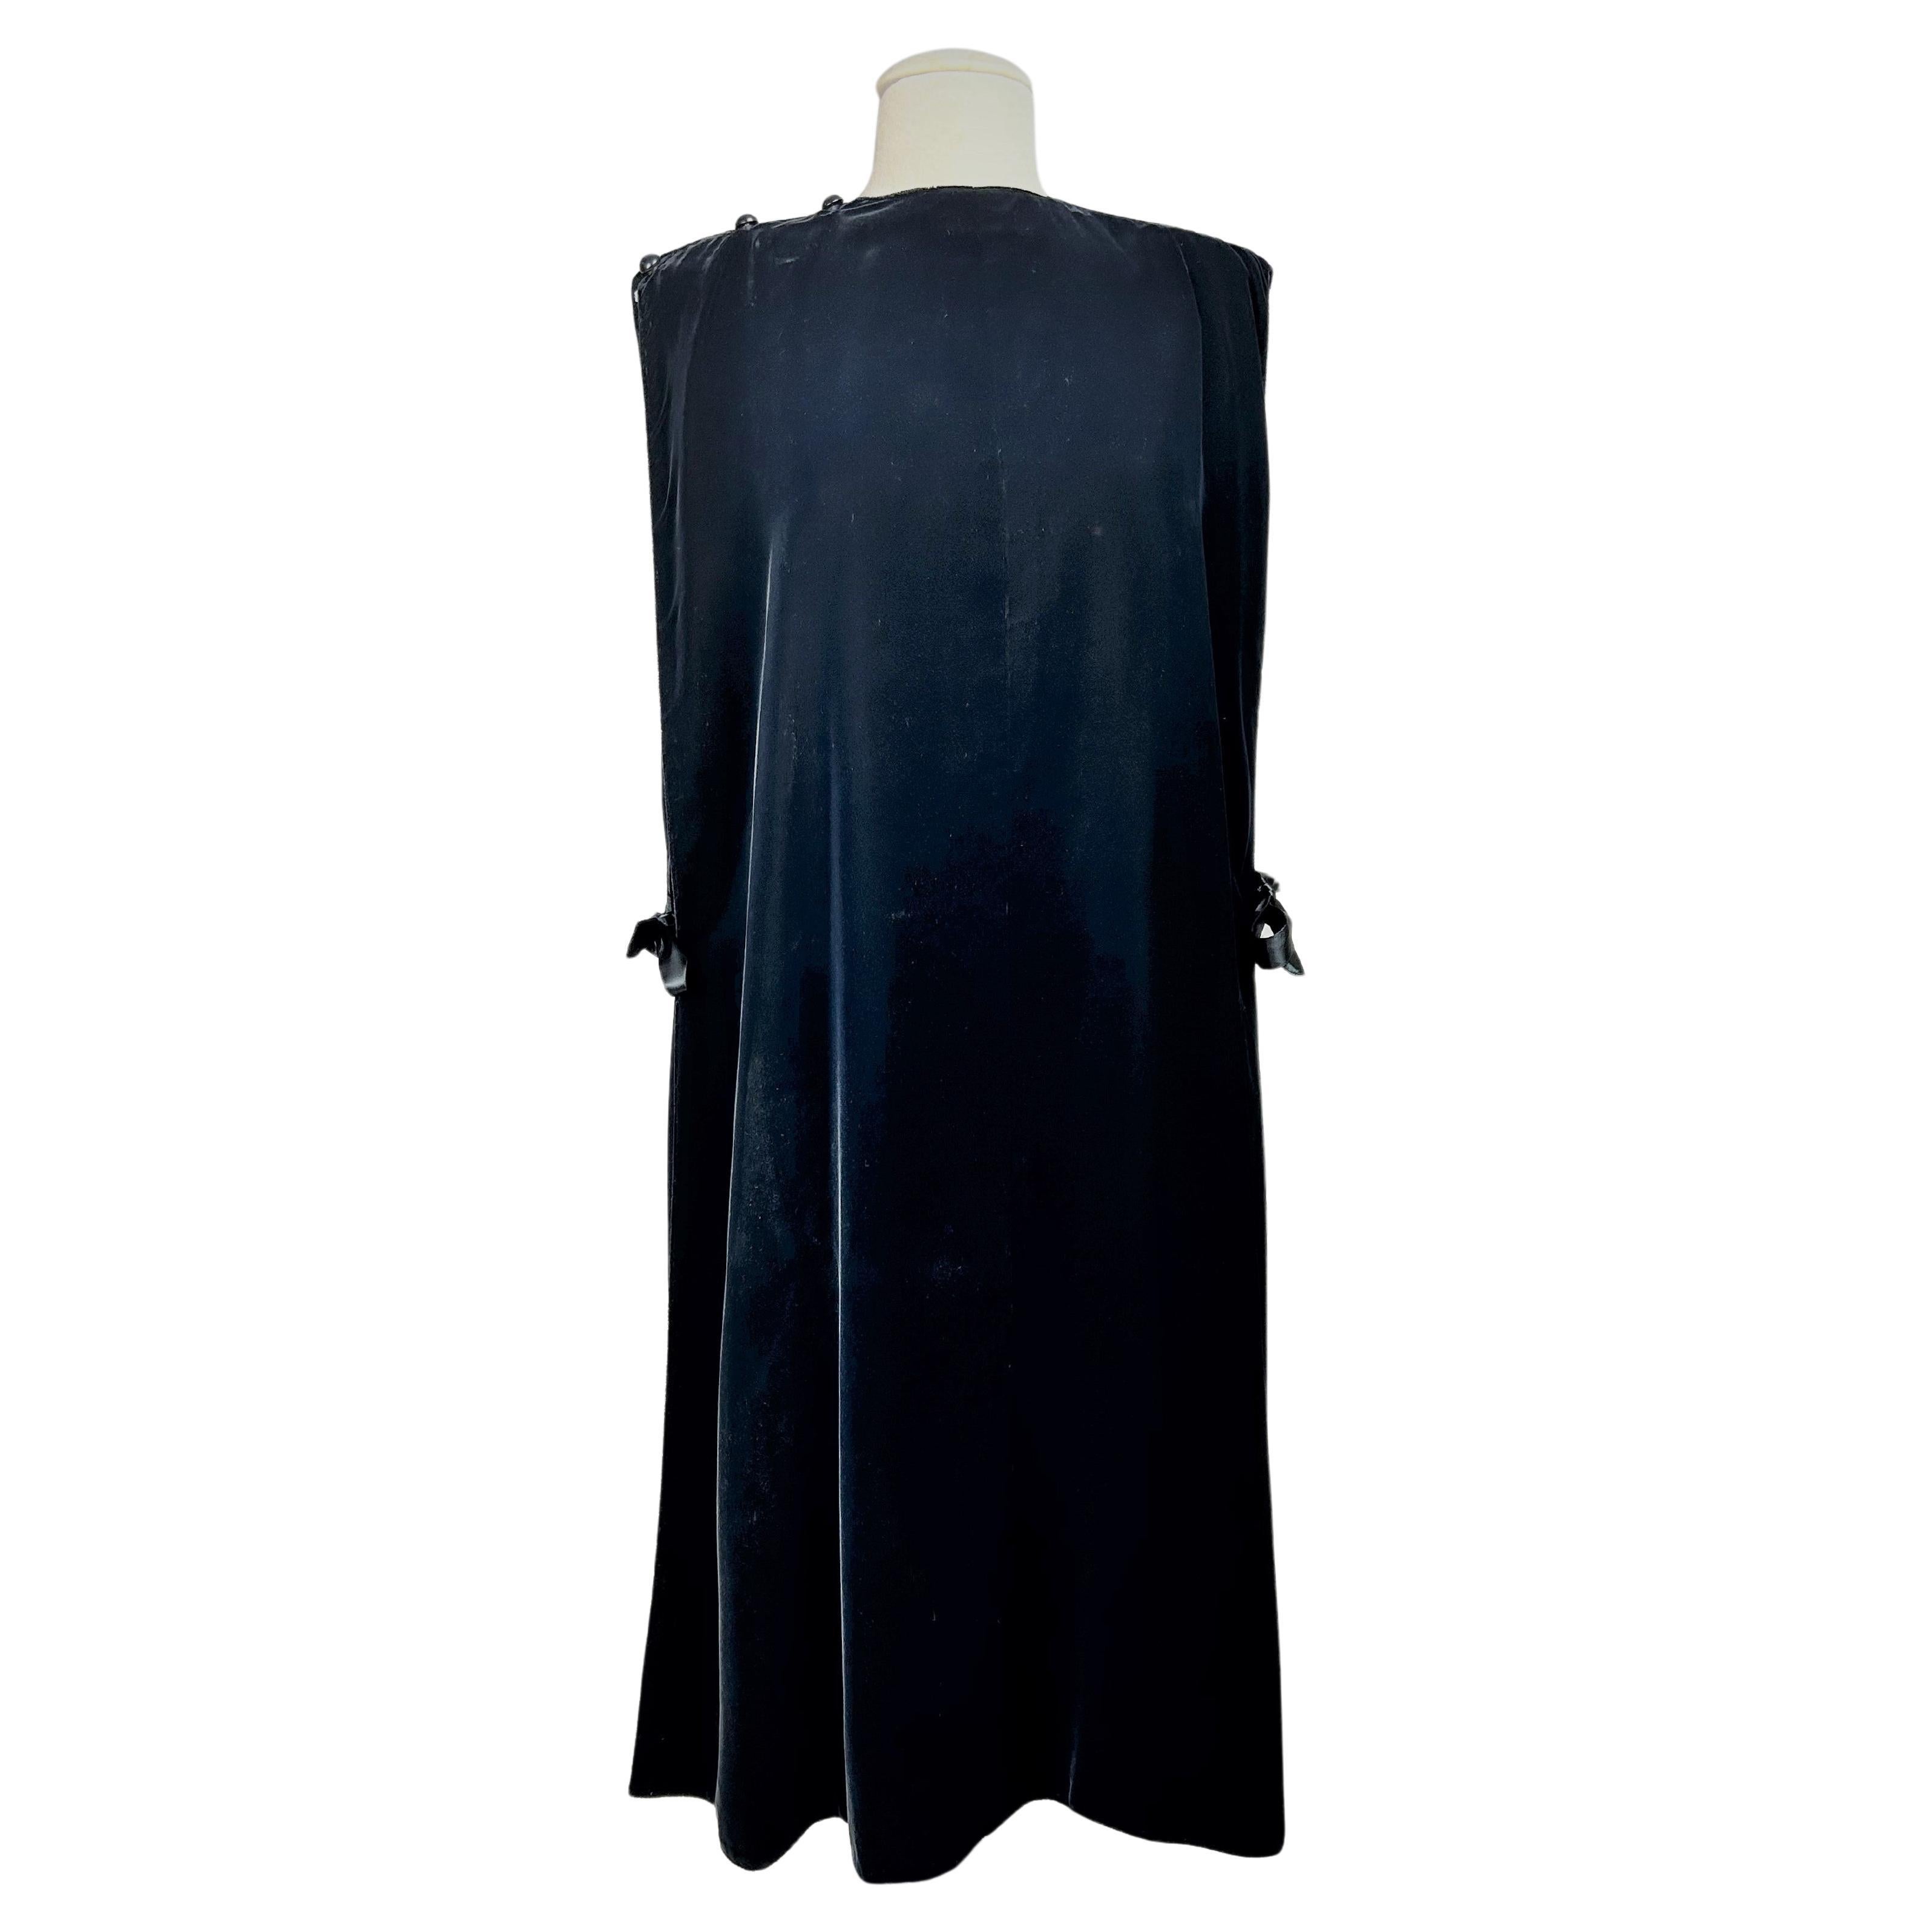 Circa 1980

France

Elégante robe du soir Chasuble en velours de soie noire de Madame Grès Haute Couture (attribuée à) datant des années 1980. Chasuble minimaliste composée de deux grands panneaux triangulaires boutonnés sur une épaule. Le velours